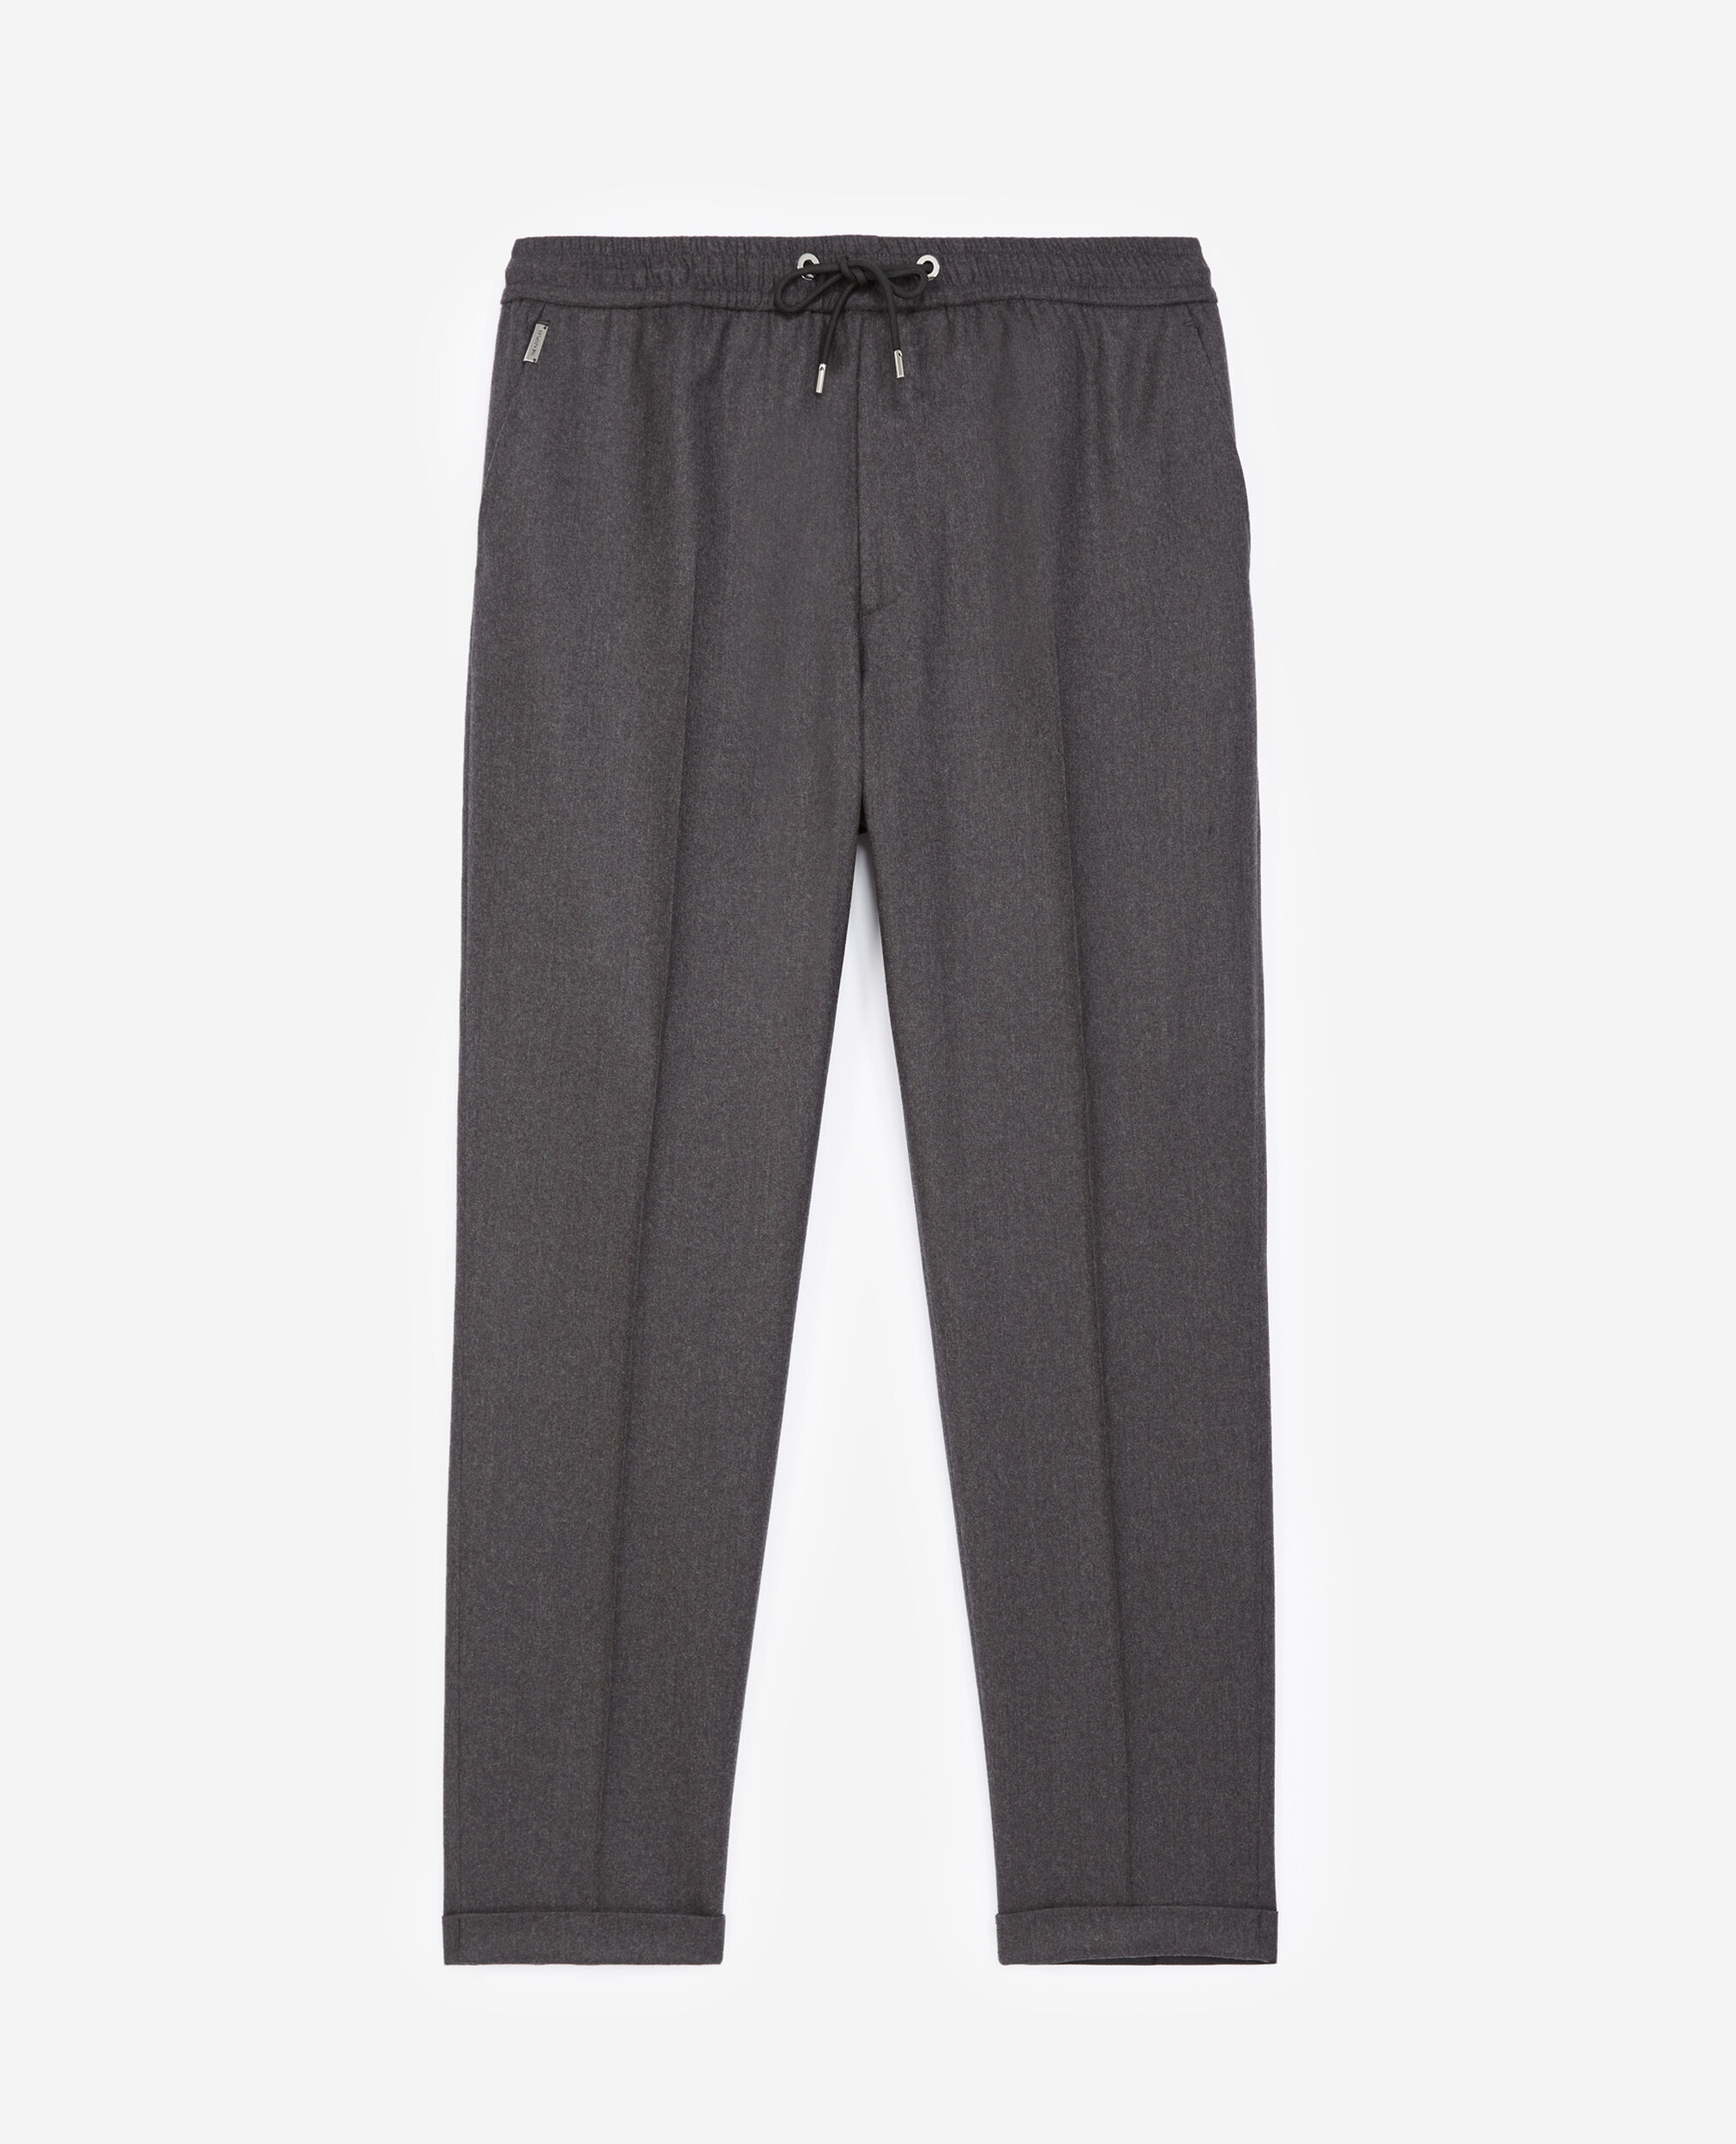 Pantalon laine gris à élastique, DARK GREY, hi-res image number null